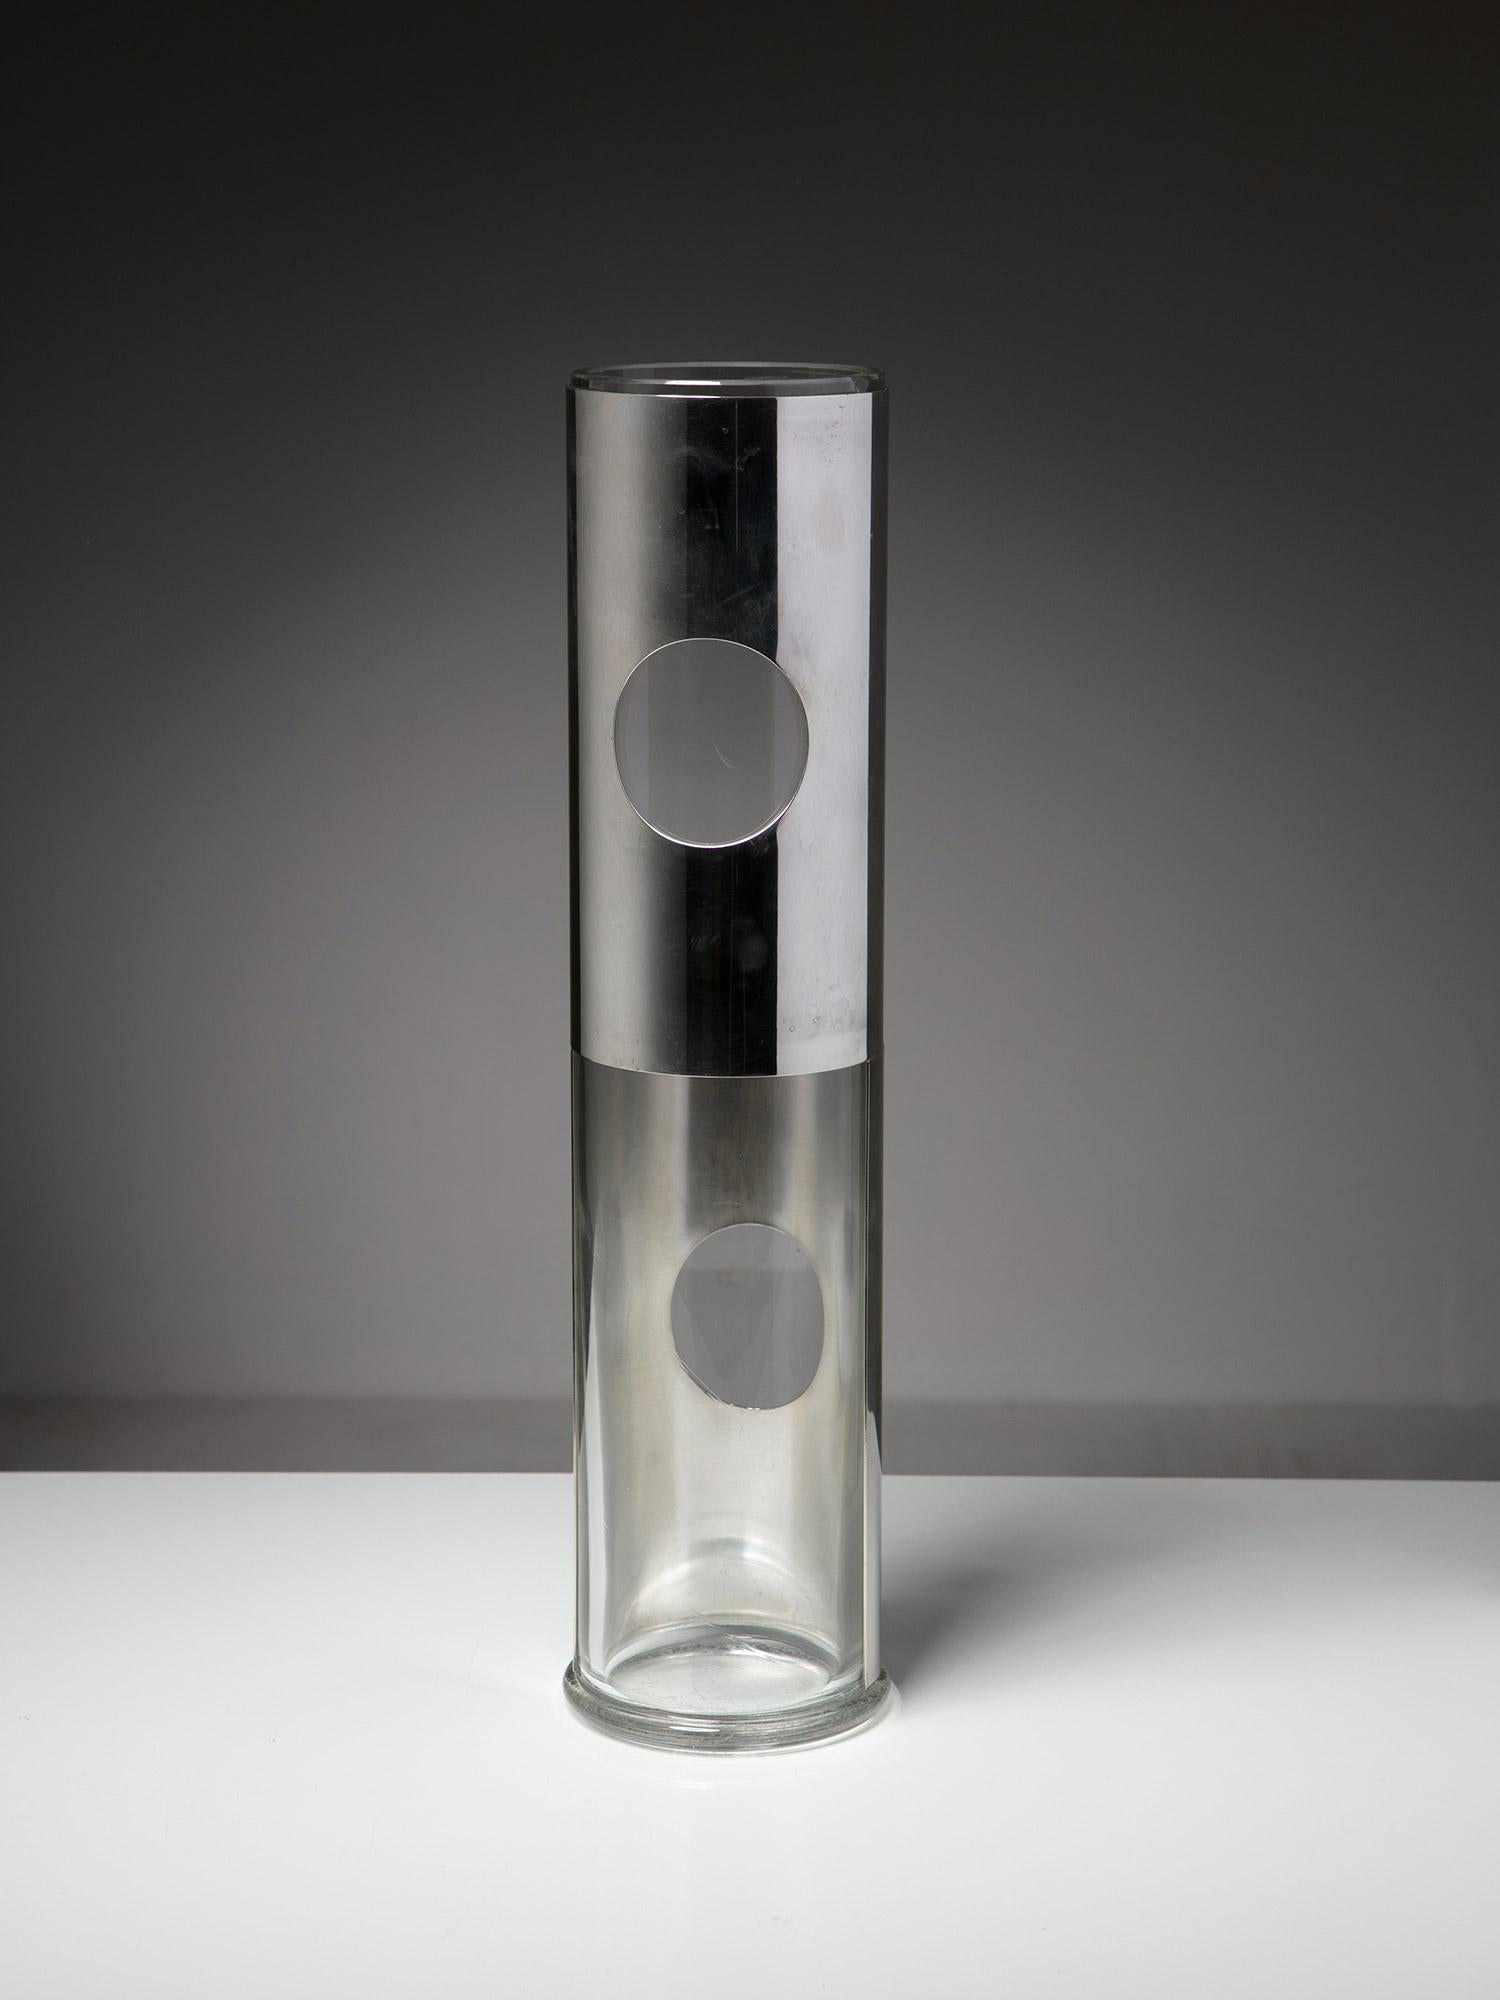 Seltene Vase von Lino Sabattini für Sabattini Argenteria.
Vase aus Murano-Glas mit zwei unabhängigen, versilberten, beweglichen Elementen.